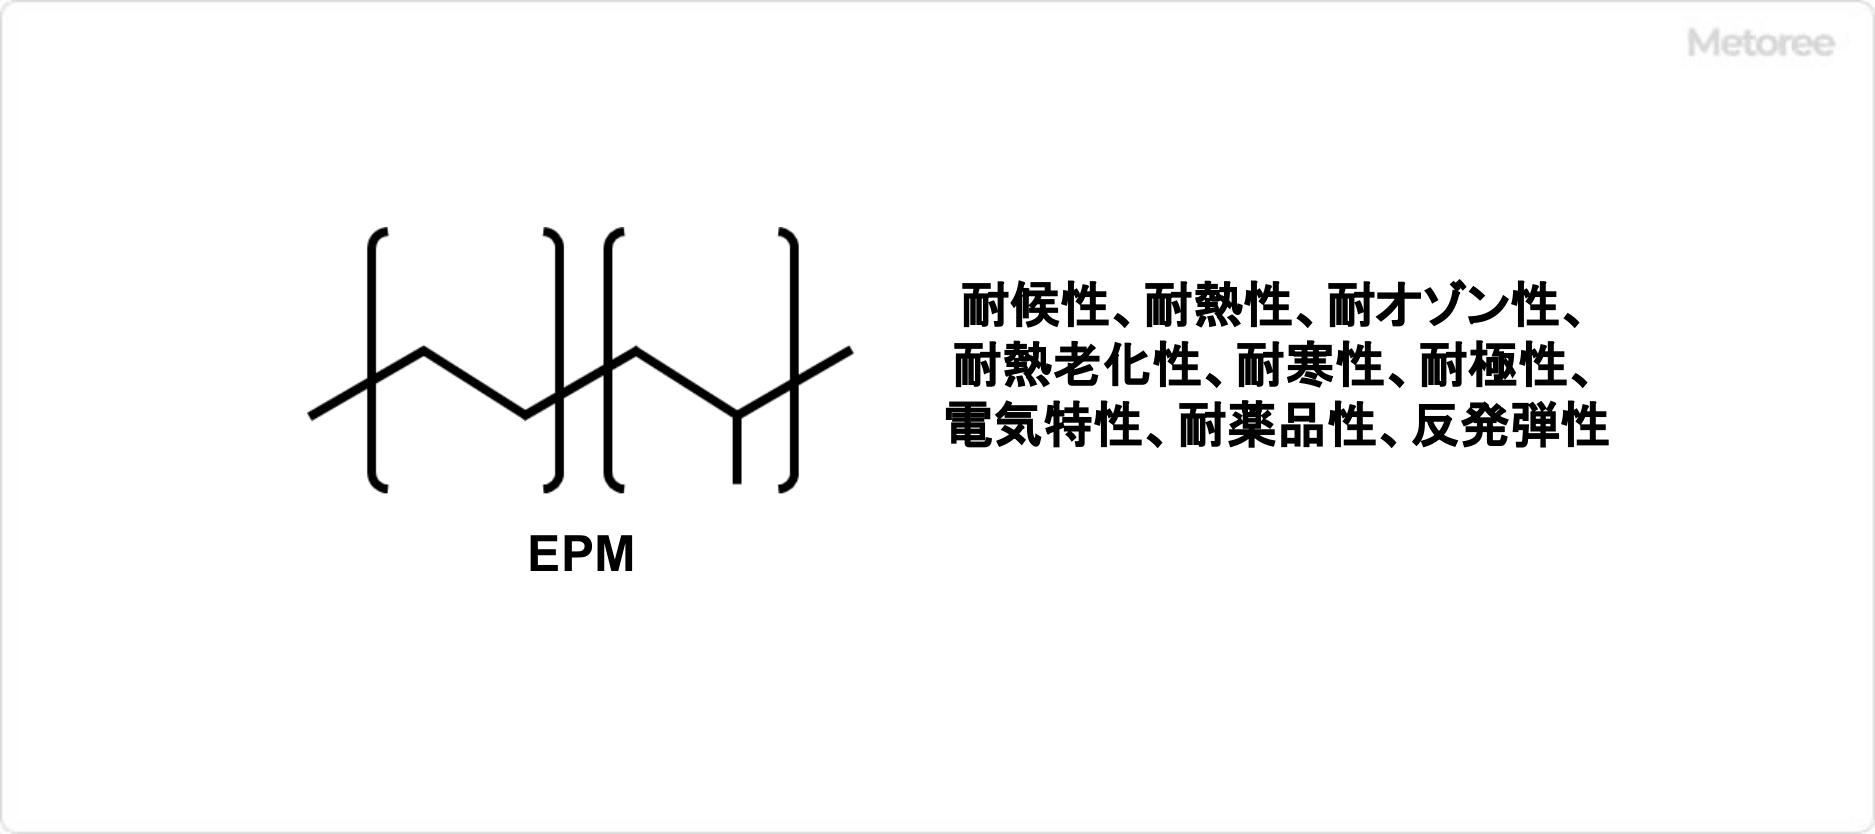 エチレンプロピレンゴムの構造